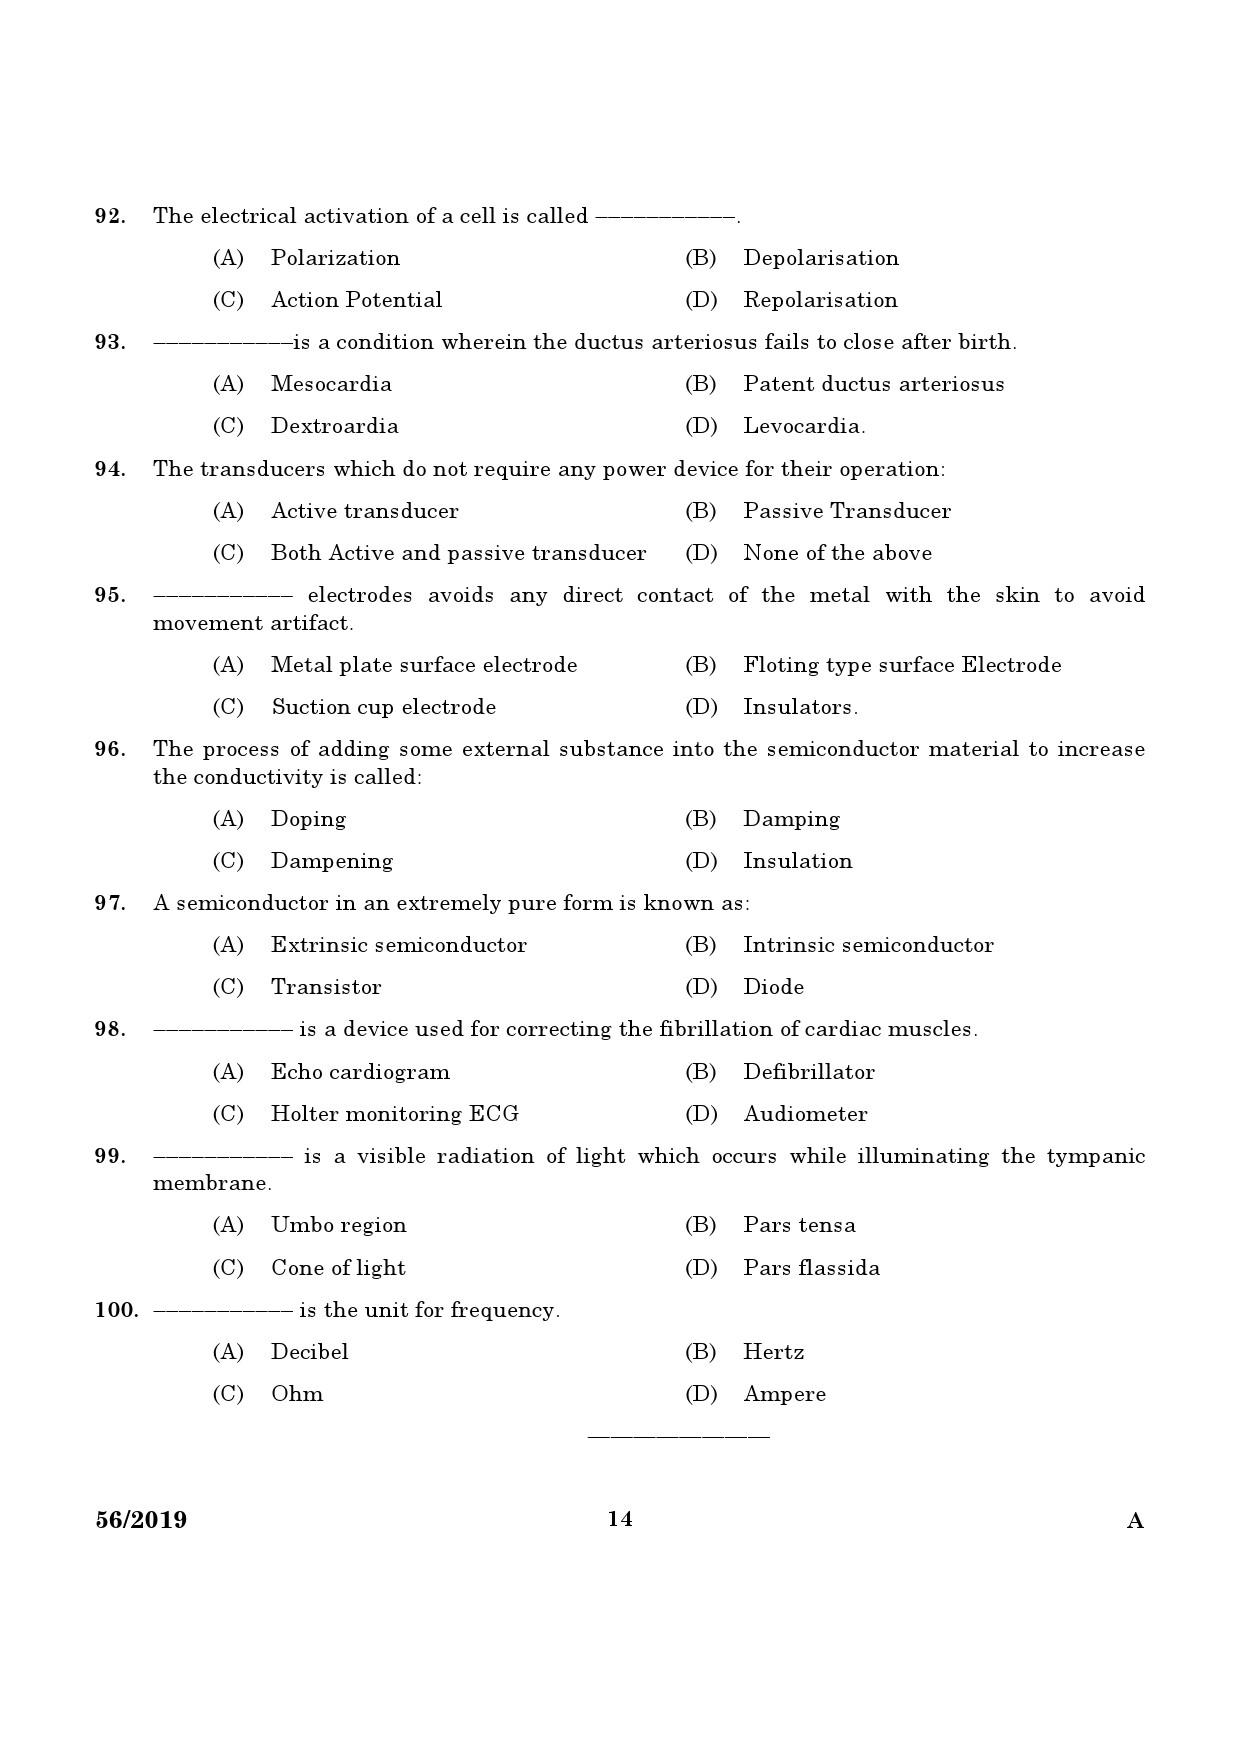 KPSC ECG Technician Grade II Exam Question Paper 0562019 12